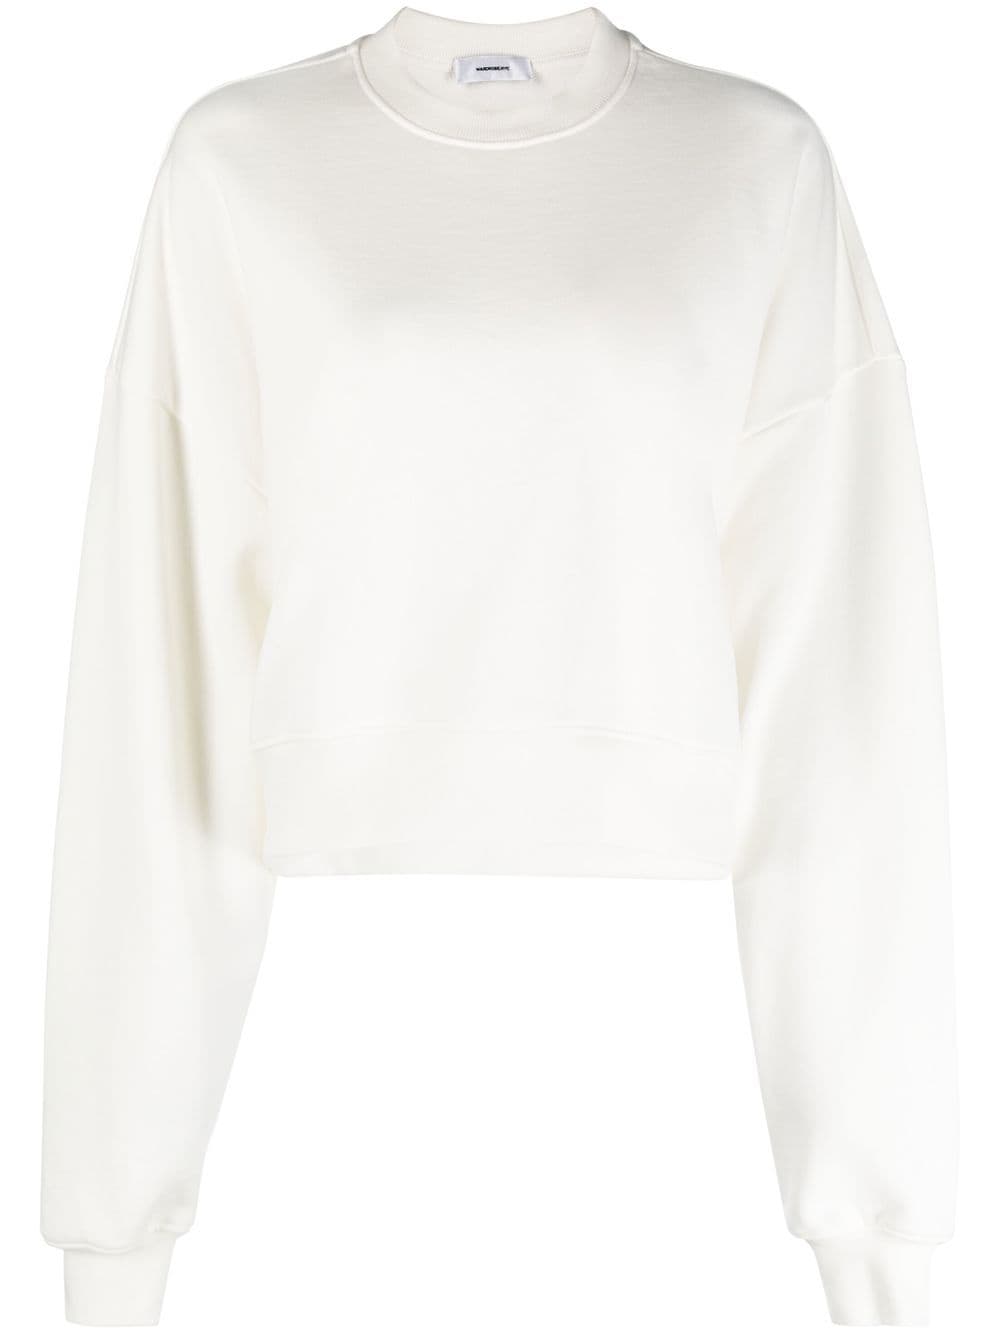 WARDROBE.NYC Sweatshirt mit rundem Ausschnitt - Weiß von WARDROBE.NYC